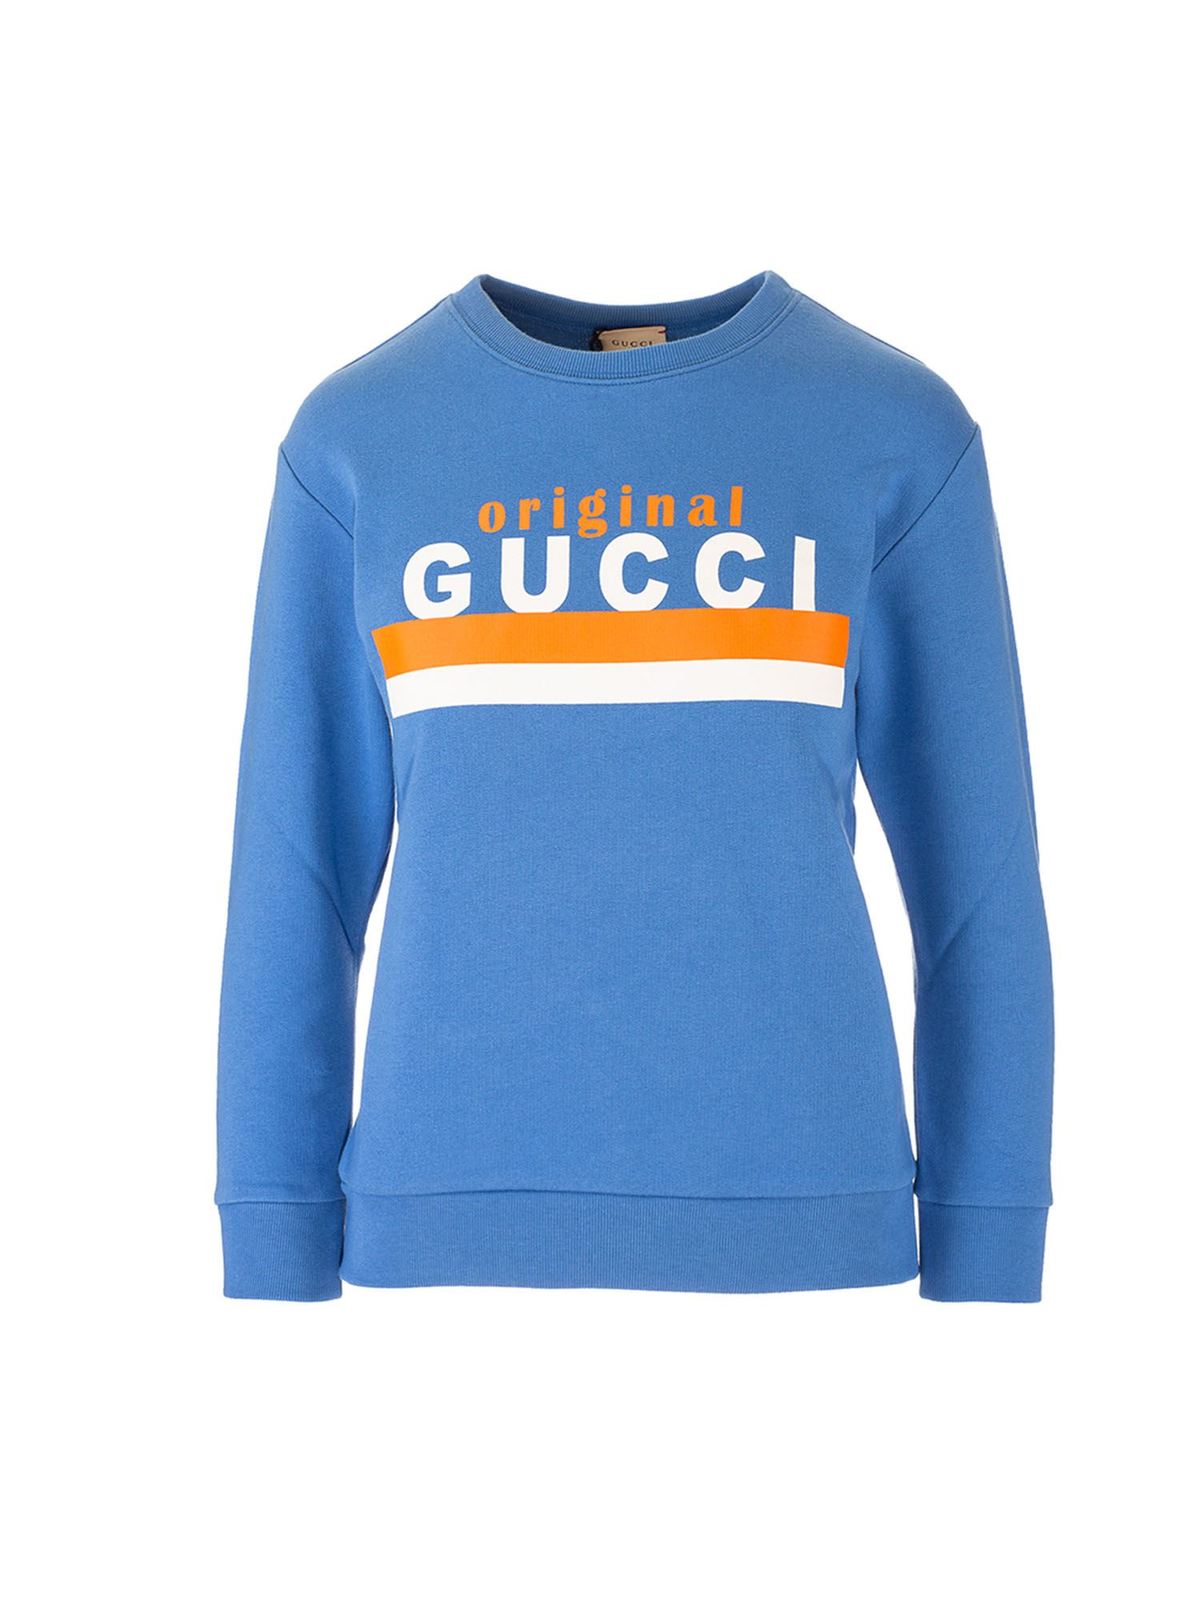 Gucci Kids' Sweaters In Avion Blue